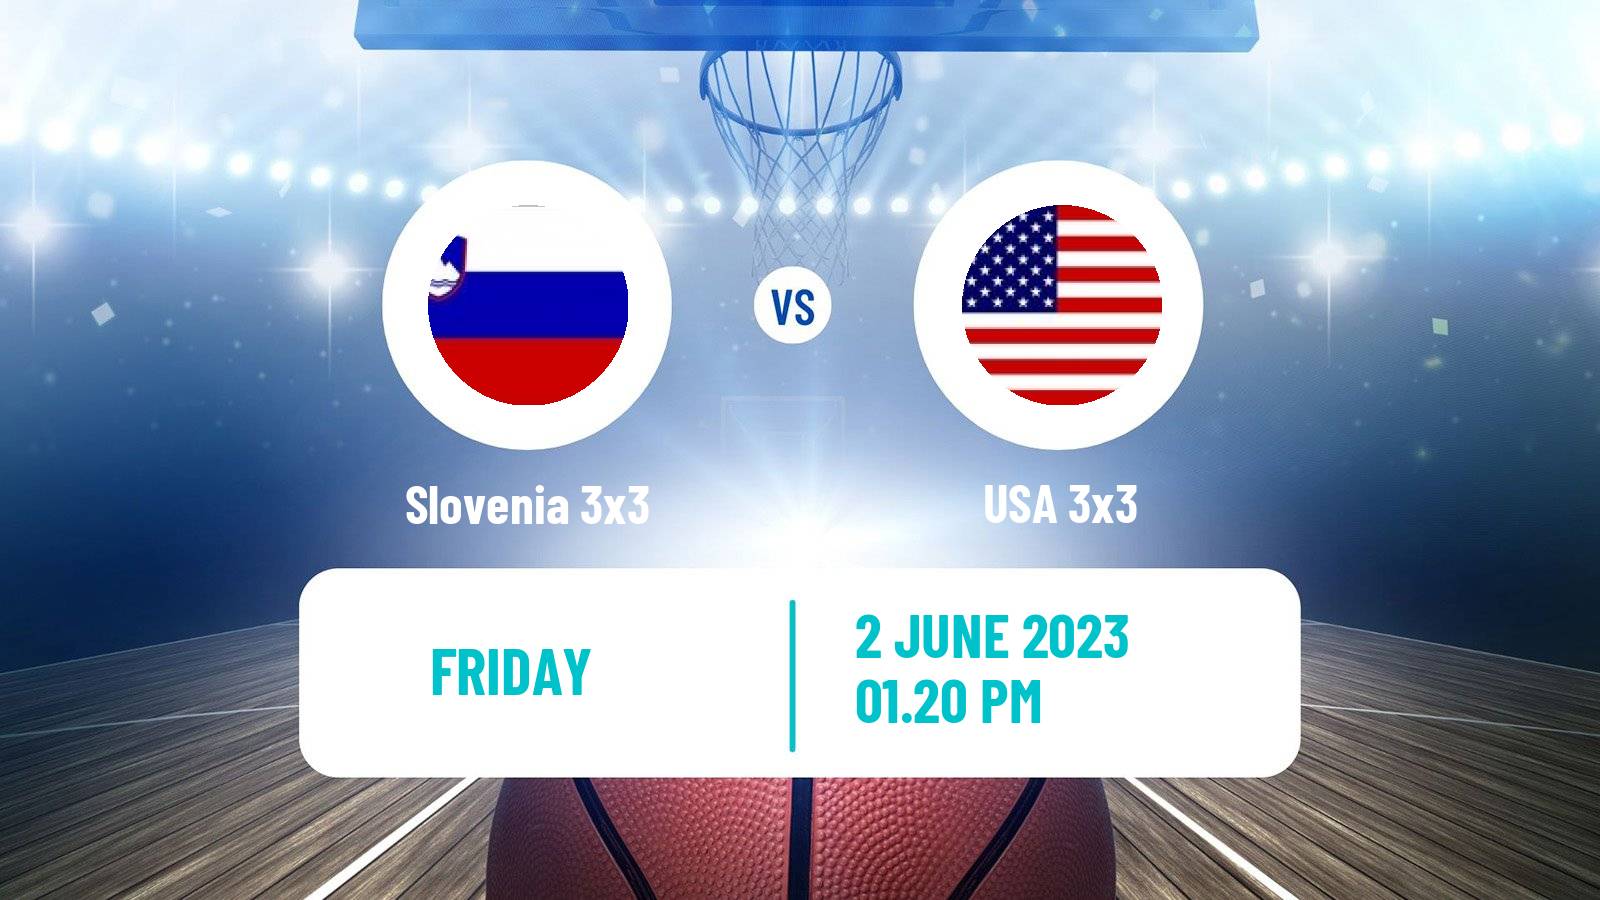 Basketball World Cup Basketball 3x3 Slovenia 3x3 - USA 3x3